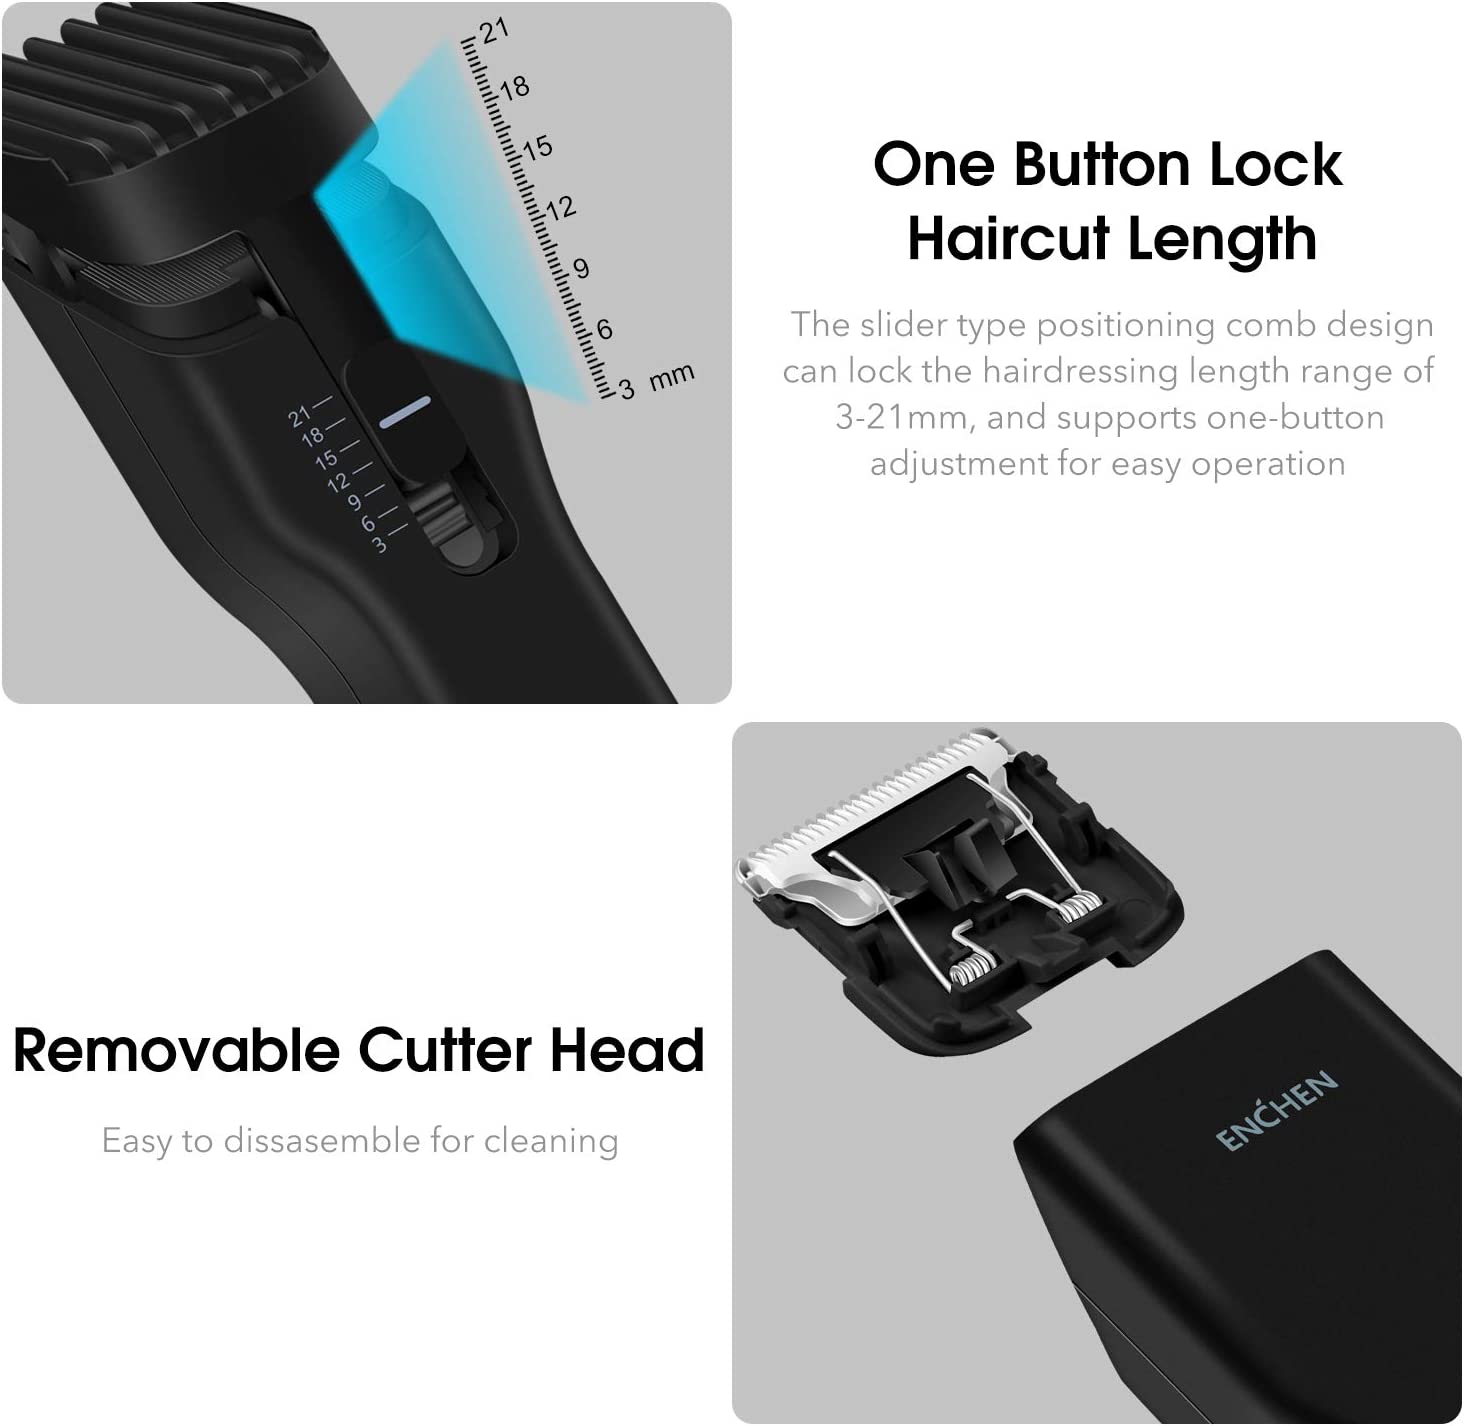 ماكينة قص الشعر الكهربائية اللاسلكية متعددة الوظائف Enchen Boost - أسود